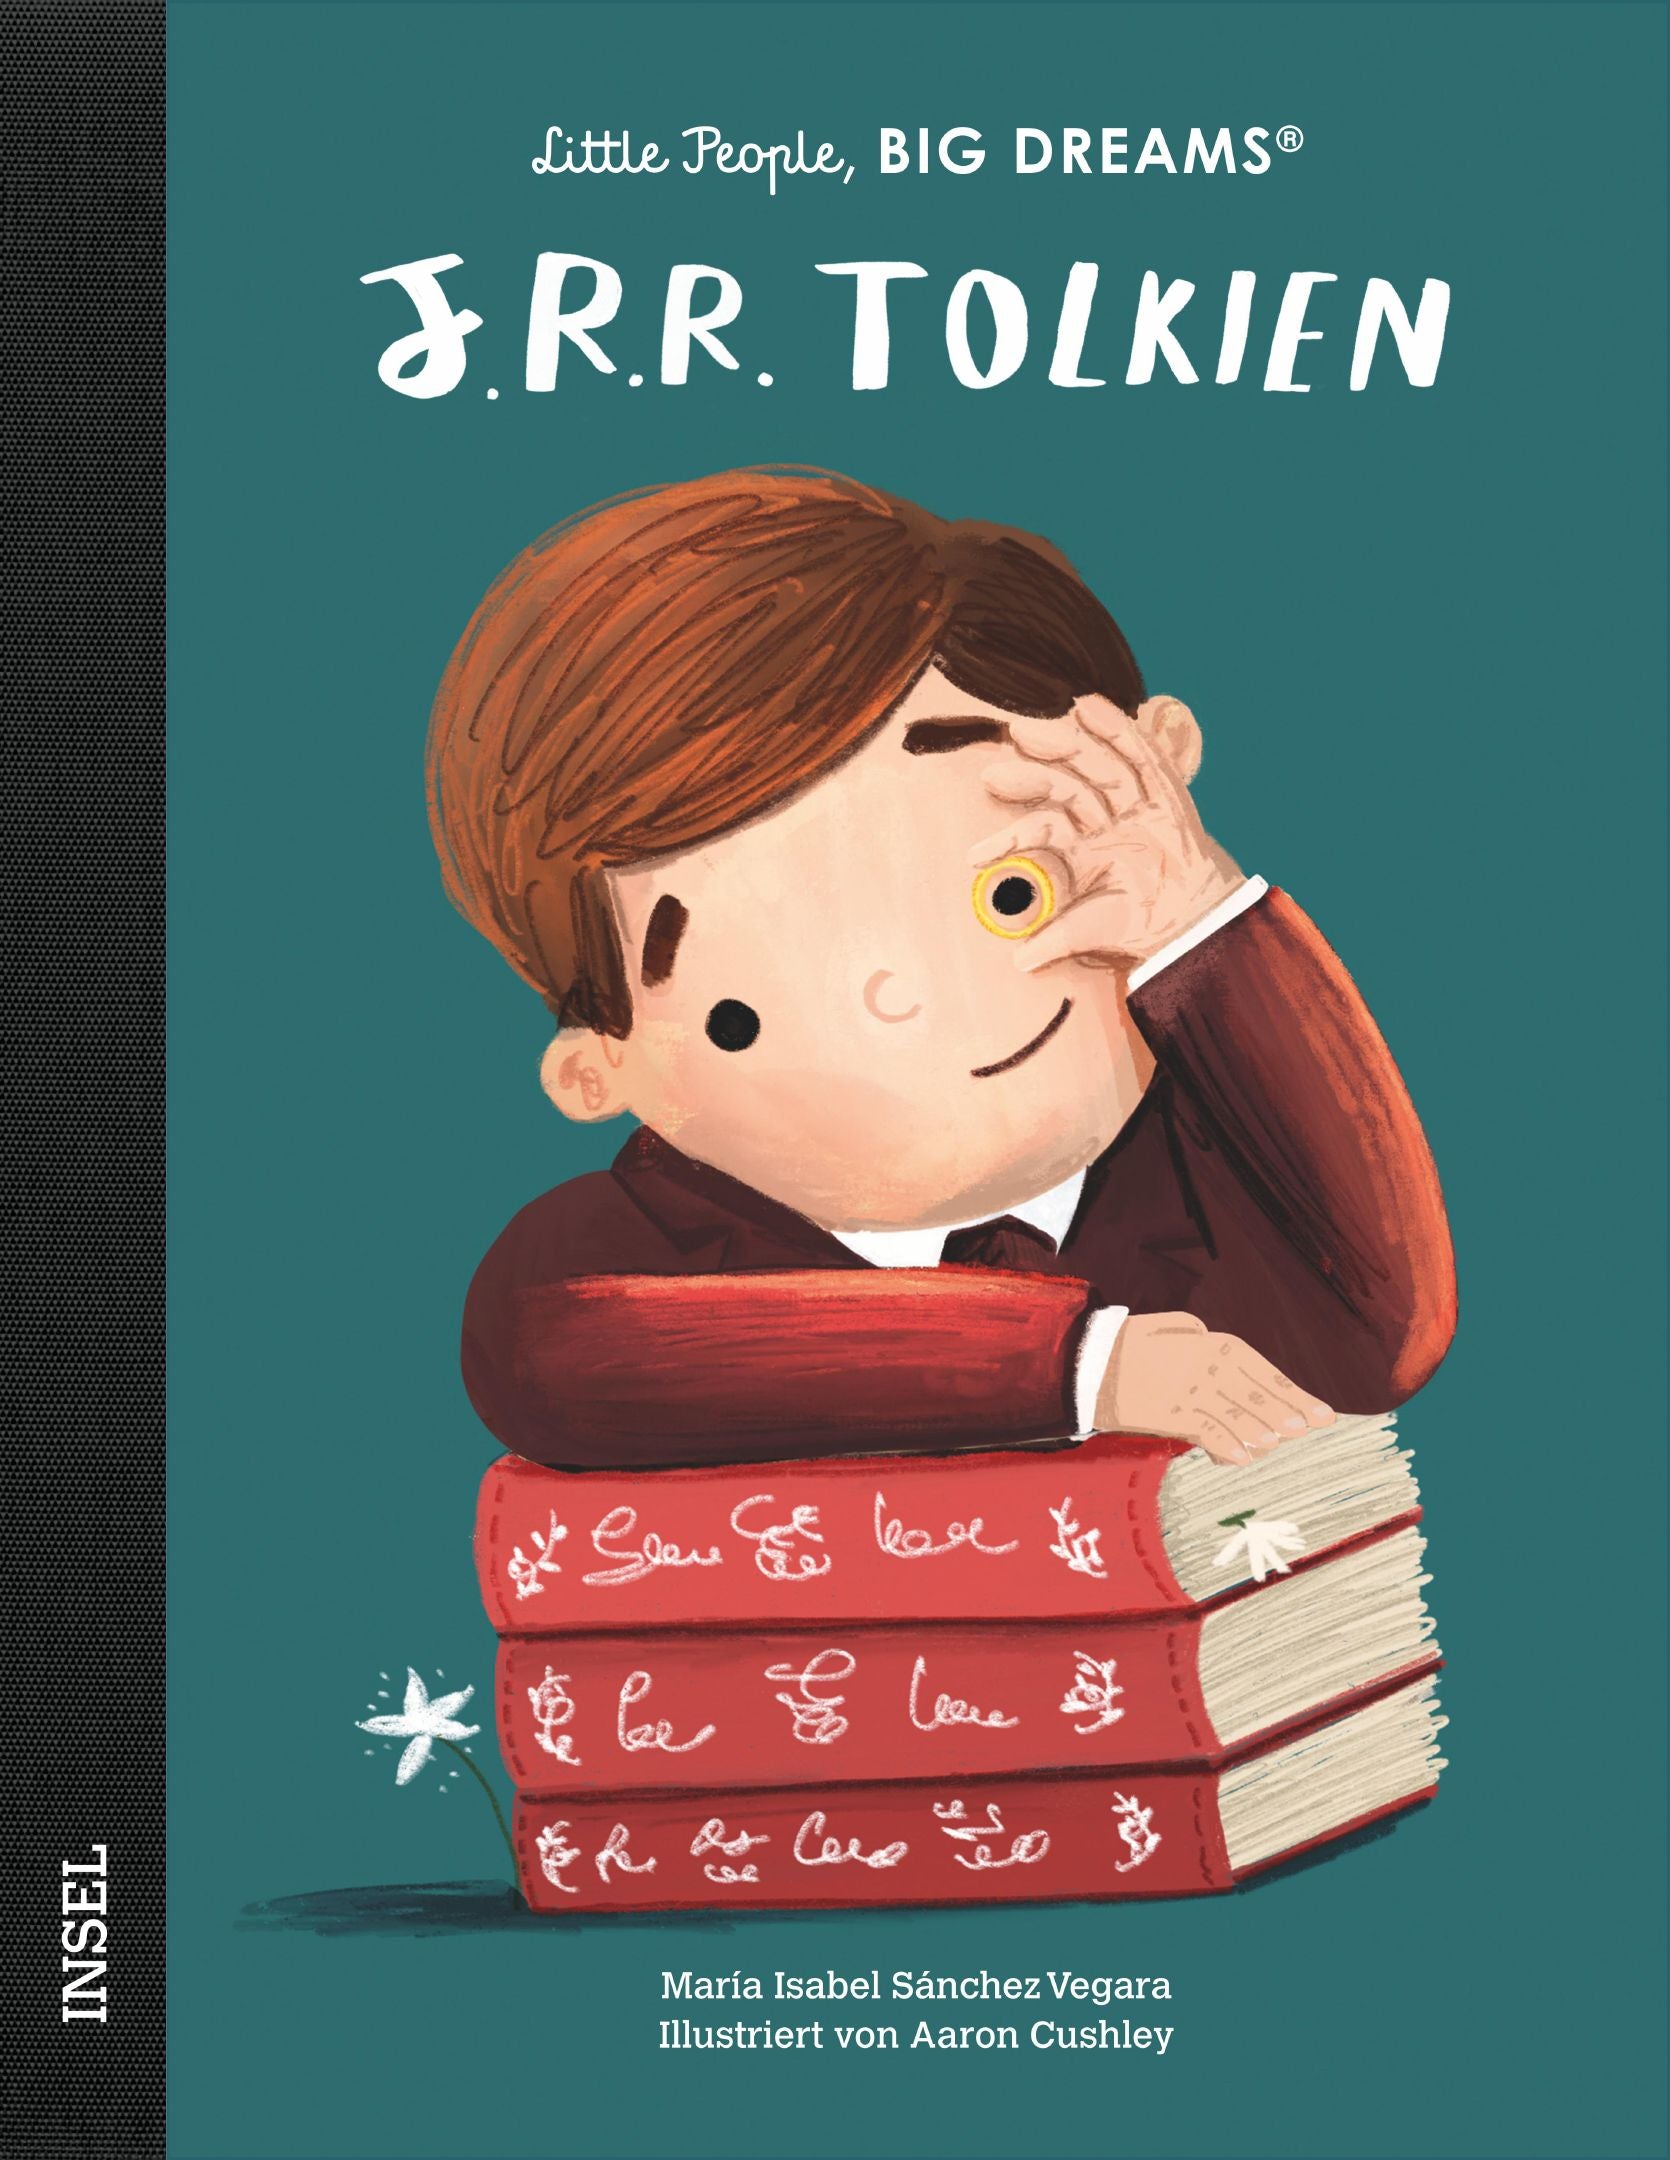 Little People - J. R. R. Tolkien